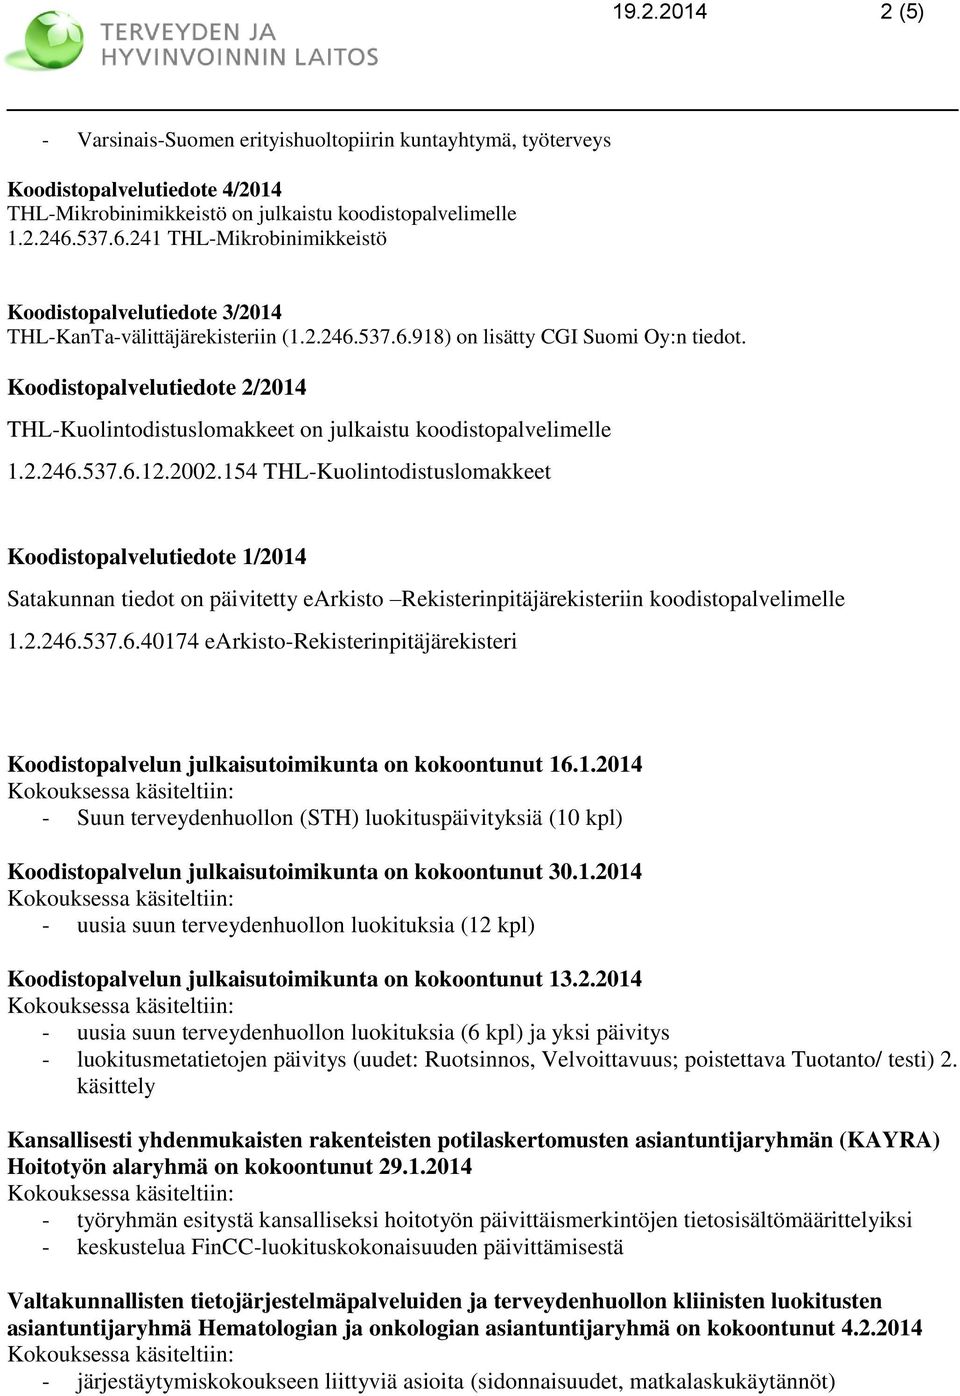 Koodistopalvelutiedote 2/2014 THL-Kuolintodistuslomakkeet on julkaistu koodistopalvelimelle 1.2.246.537.6.12.2002.